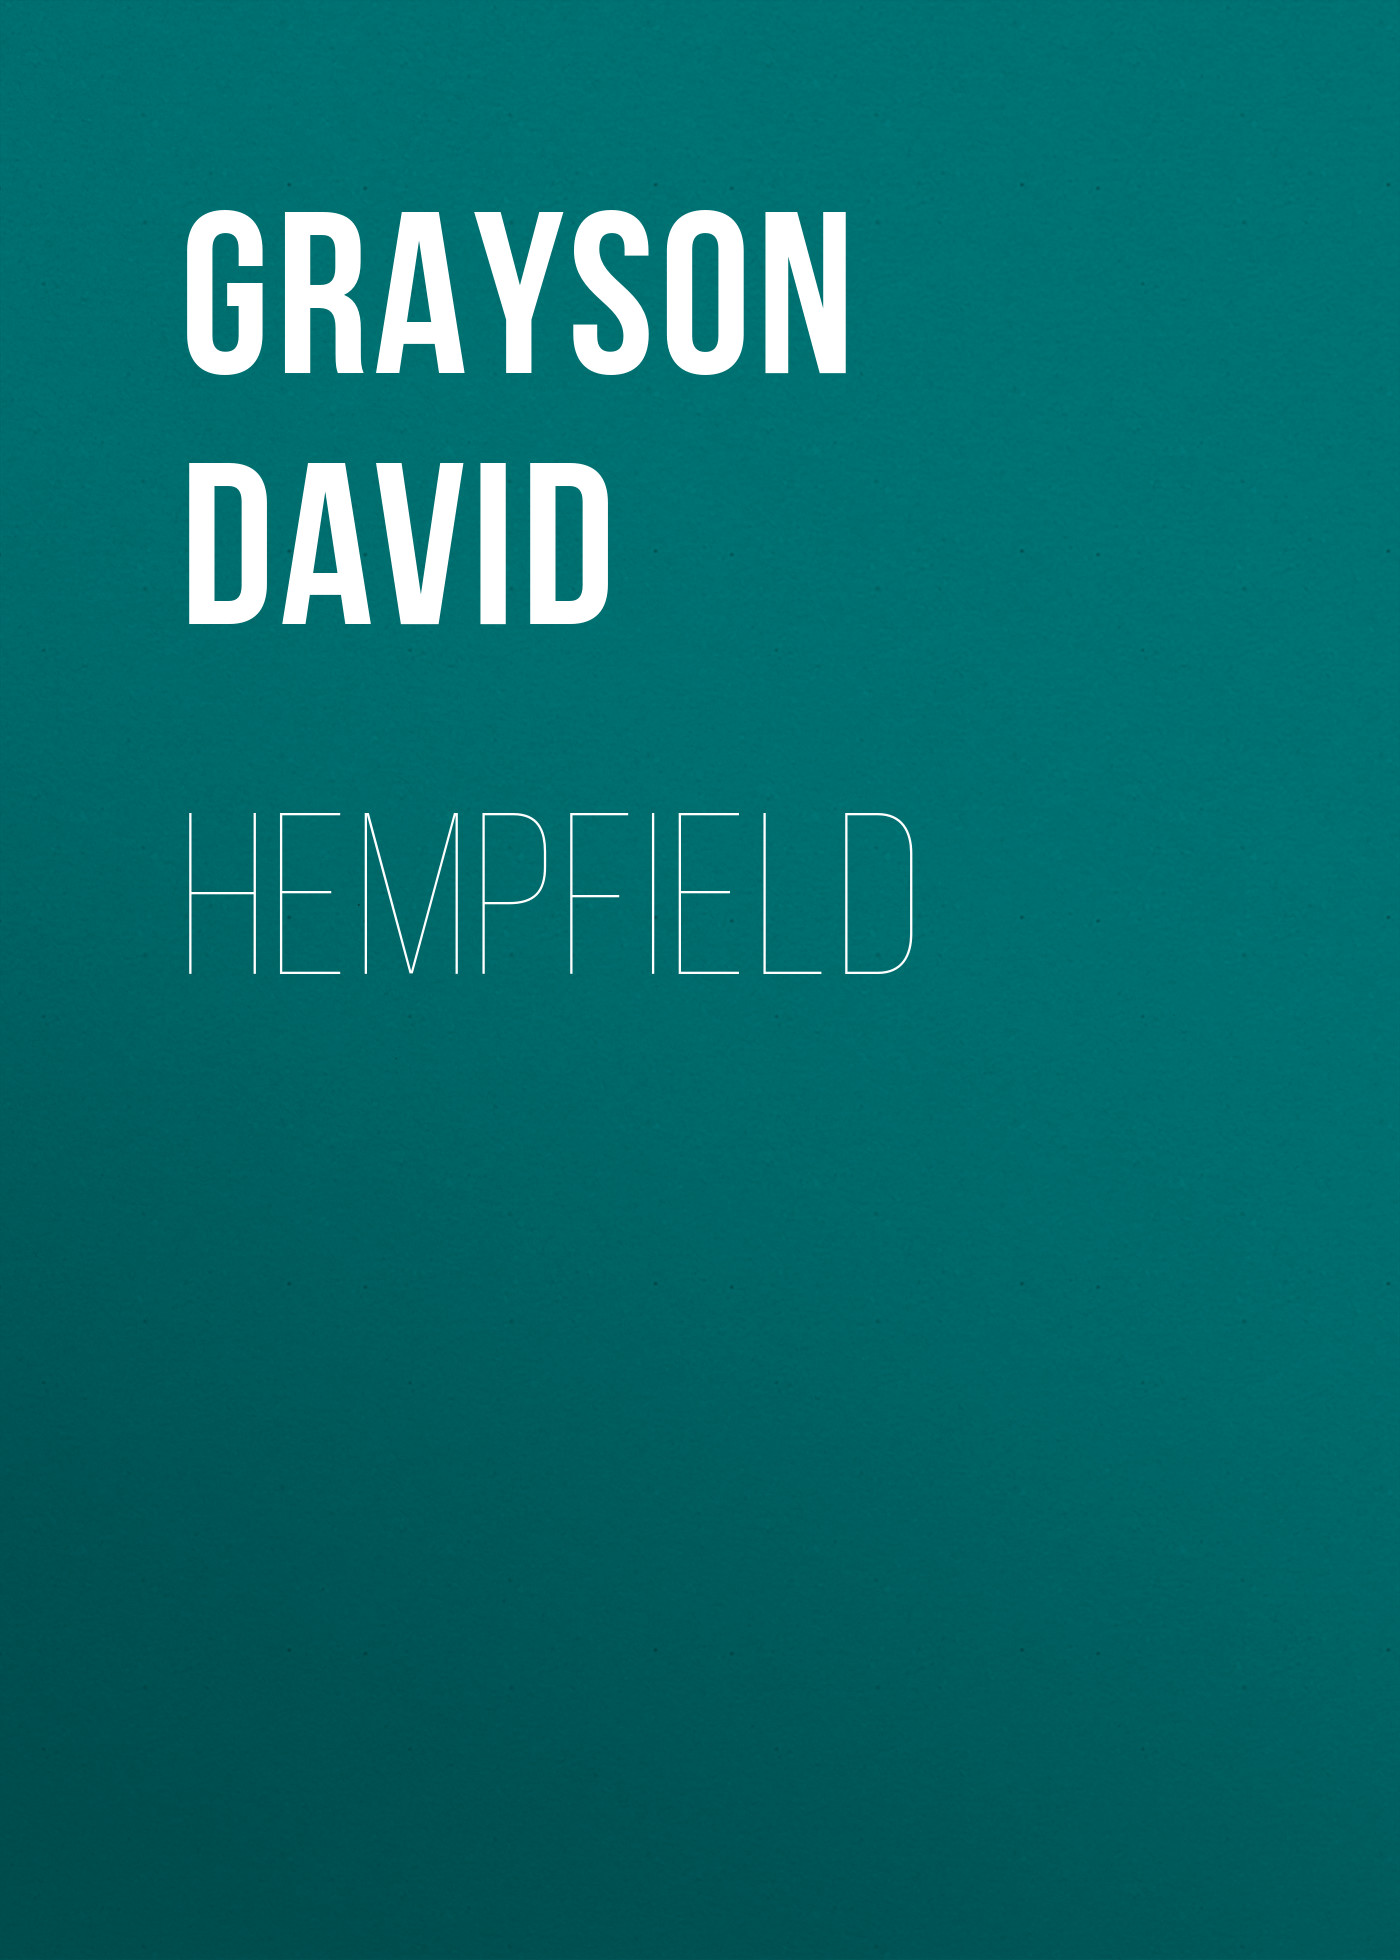 Книга Hempfield из серии , созданная David Grayson, может относится к жанру Зарубежная старинная литература, Зарубежная классика, Историческая литература. Стоимость электронной книги Hempfield с идентификатором 25449516 составляет 0 руб.